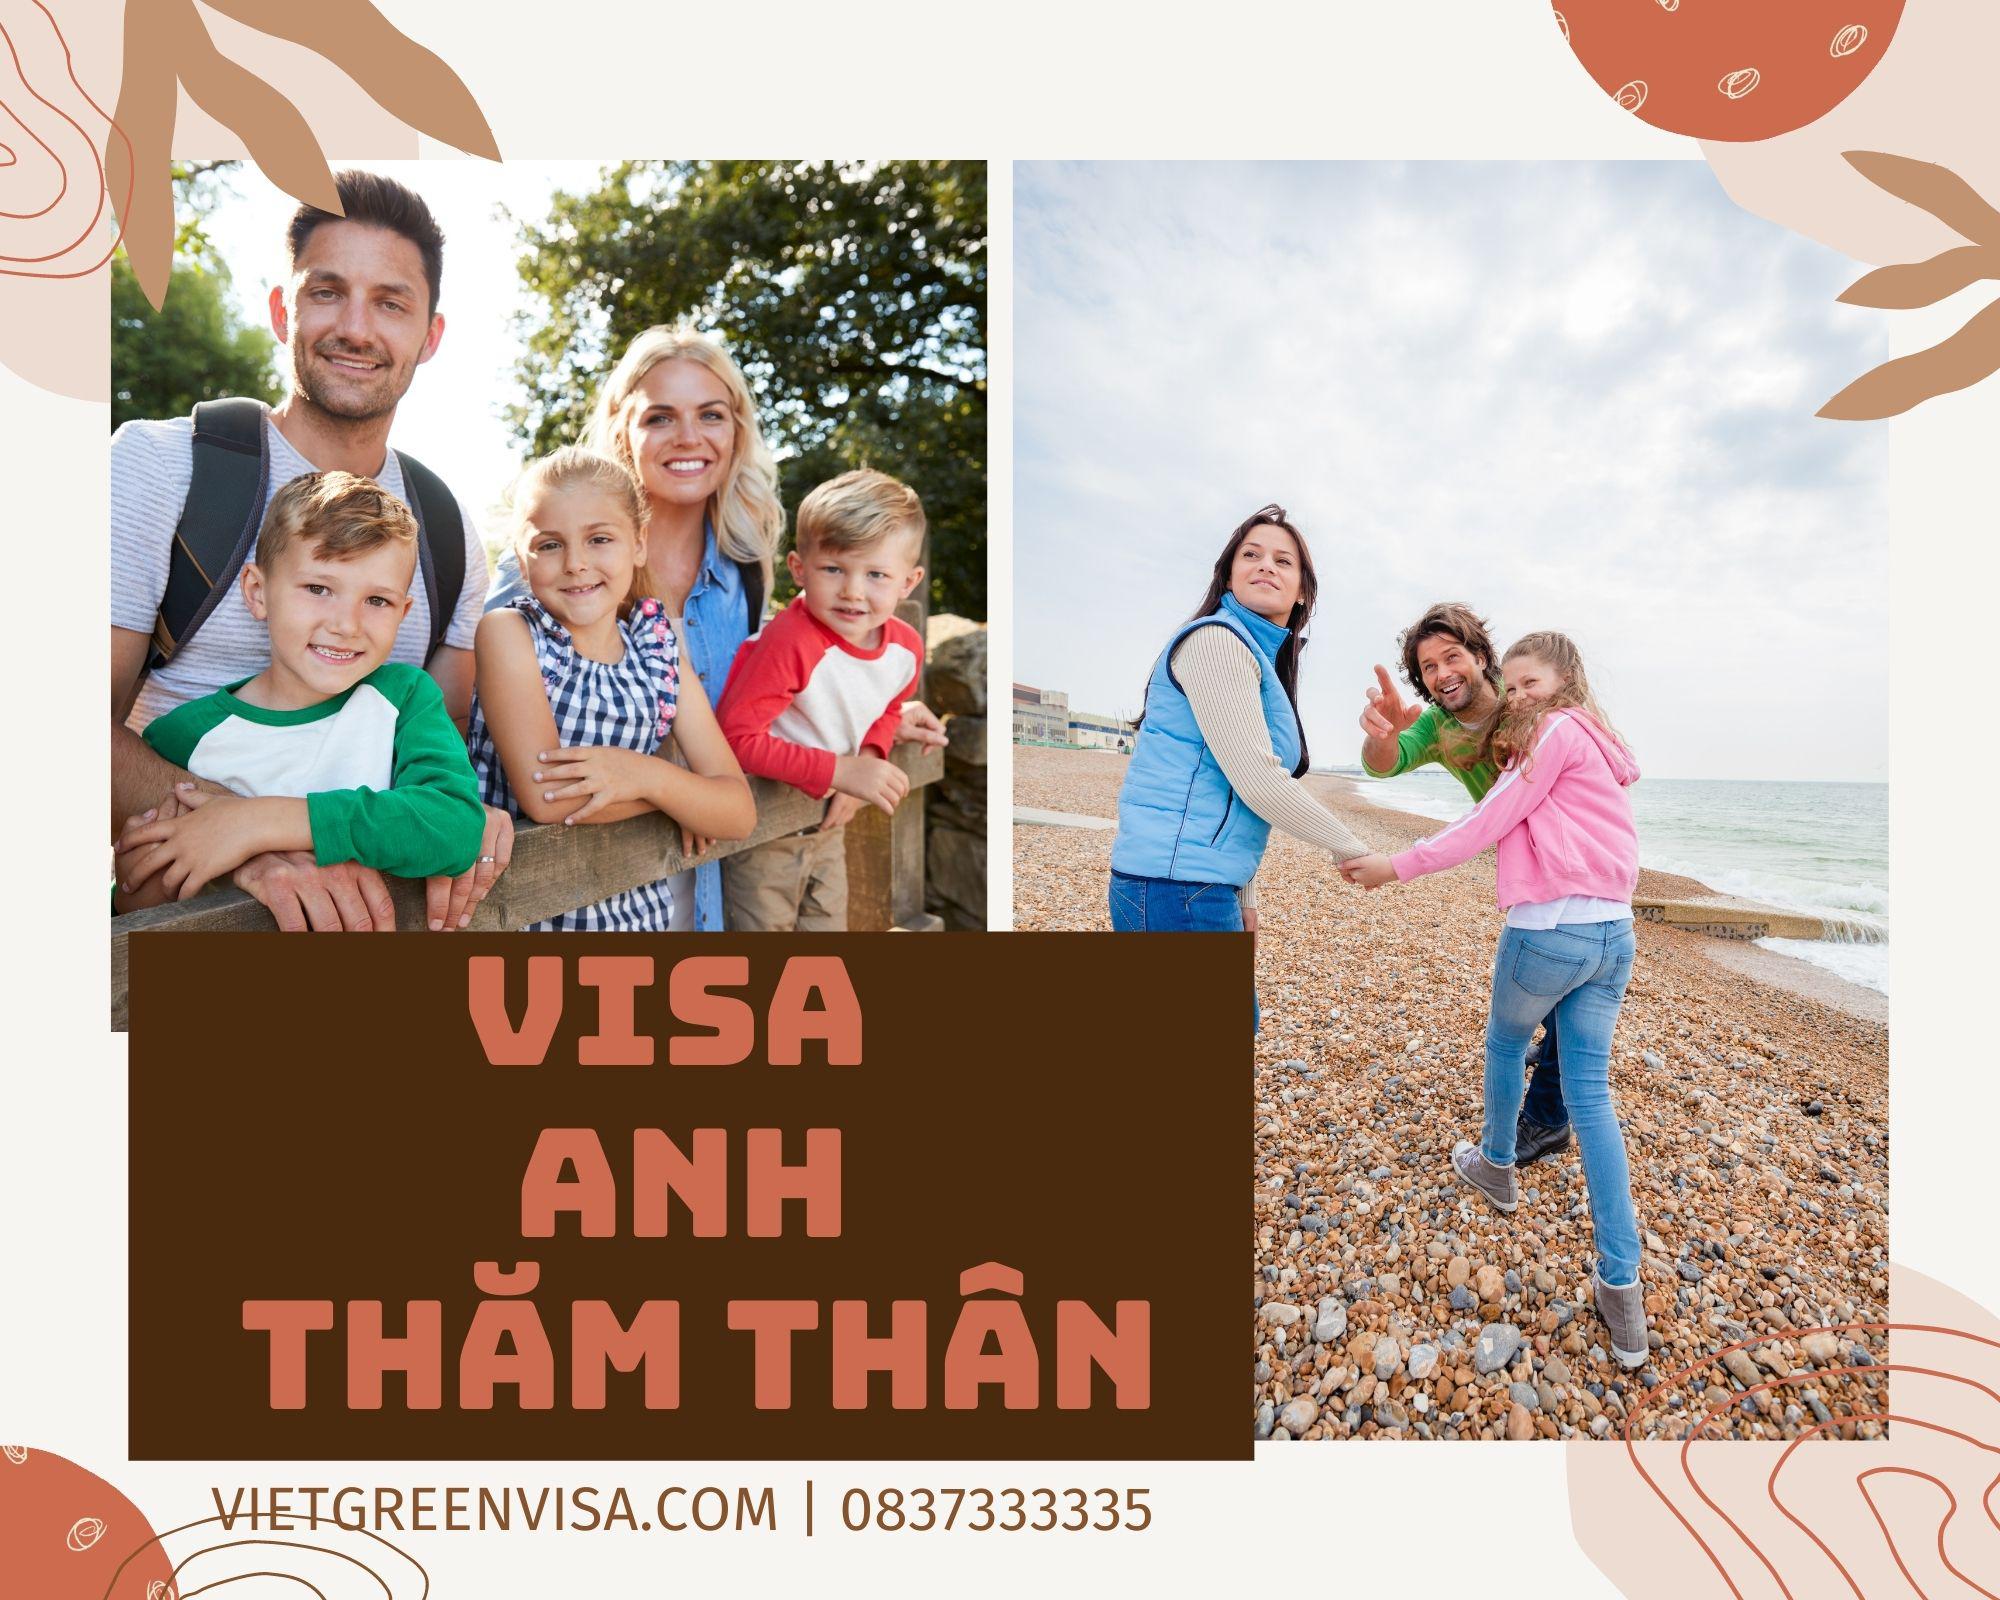 Dịch vụ xin visa đi Anh diện thăm thân nhanh chóng